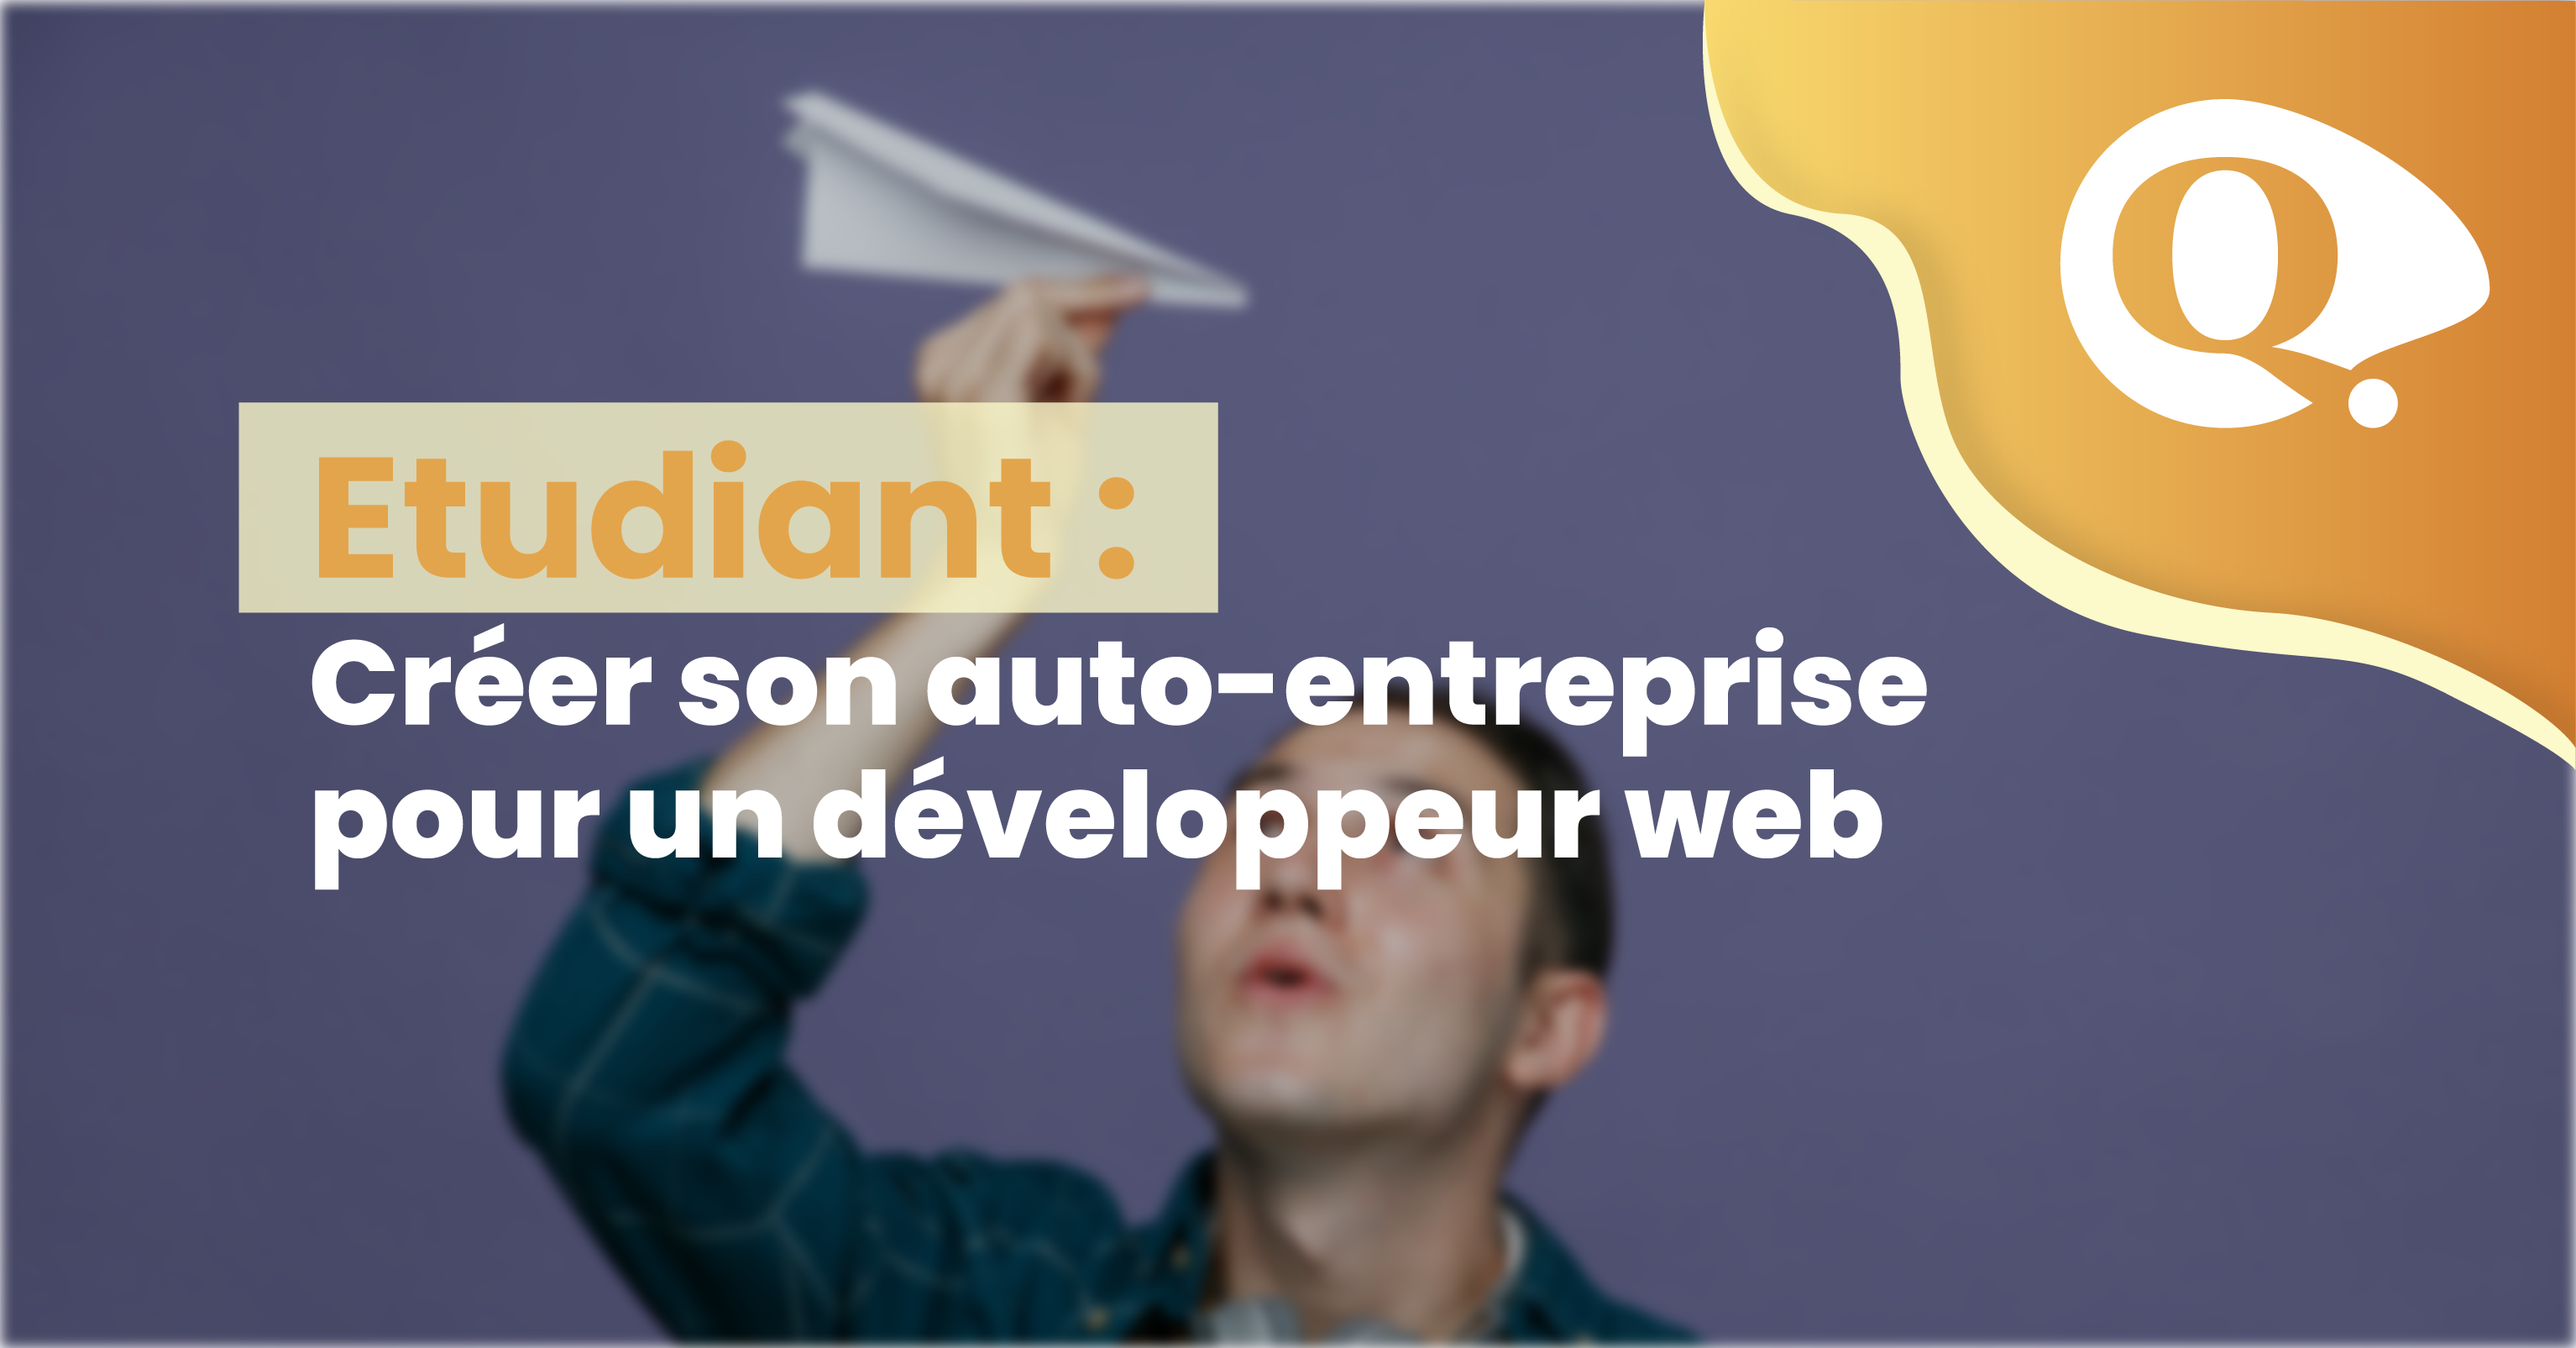 Etudiant : Créer son auto-entreprise pour un développeur web